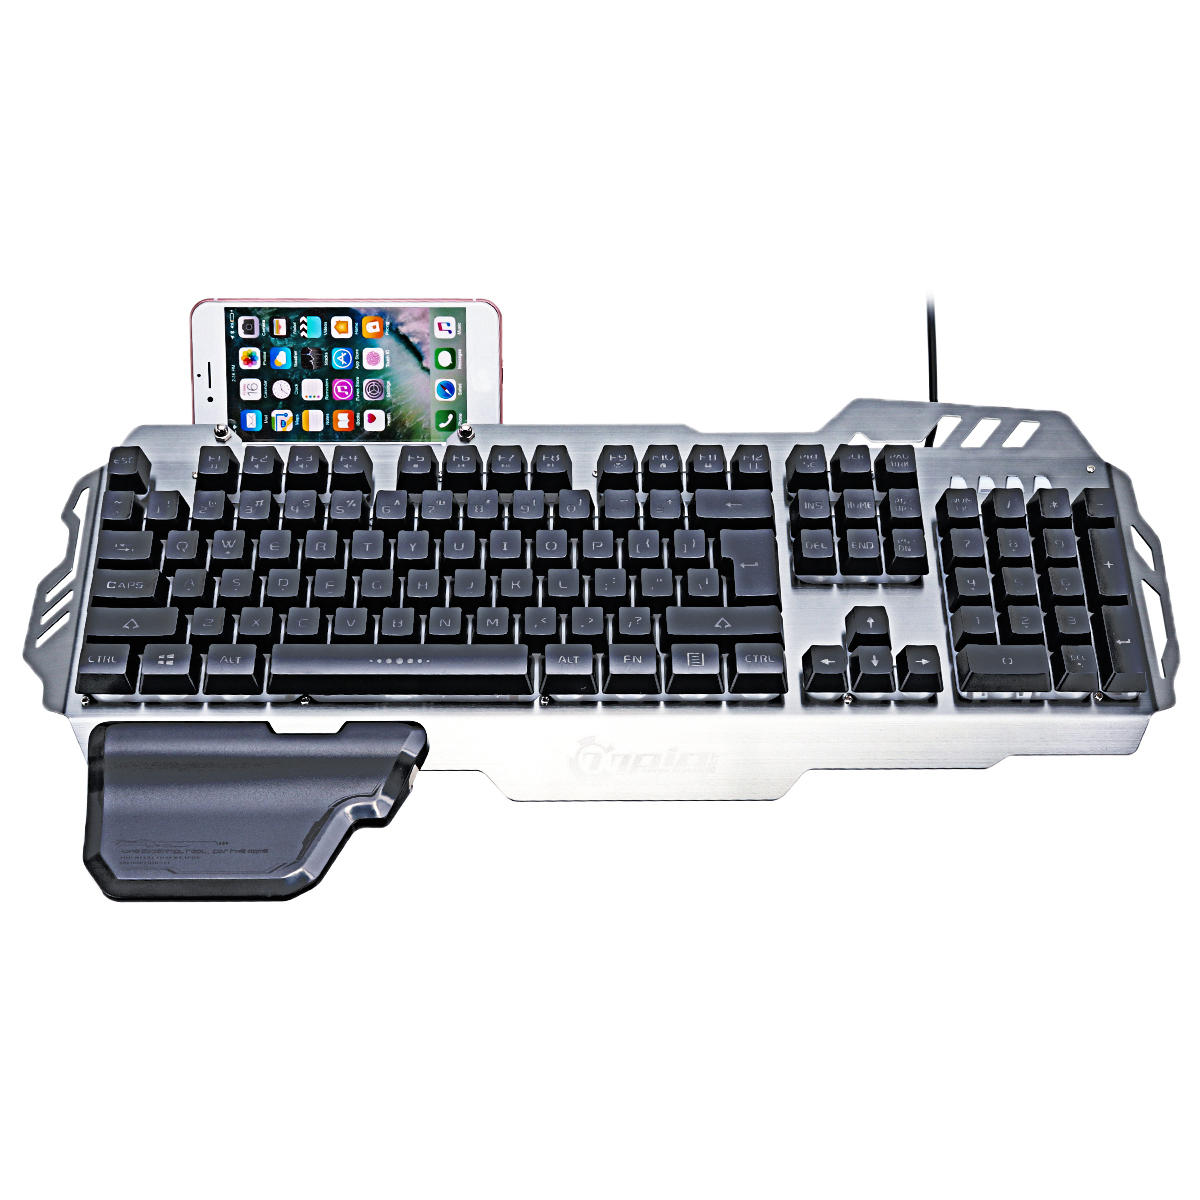 

PK-900 104 Ключи USB Проводная подсветка Механическая-Handfeel Gaming Клавиатура